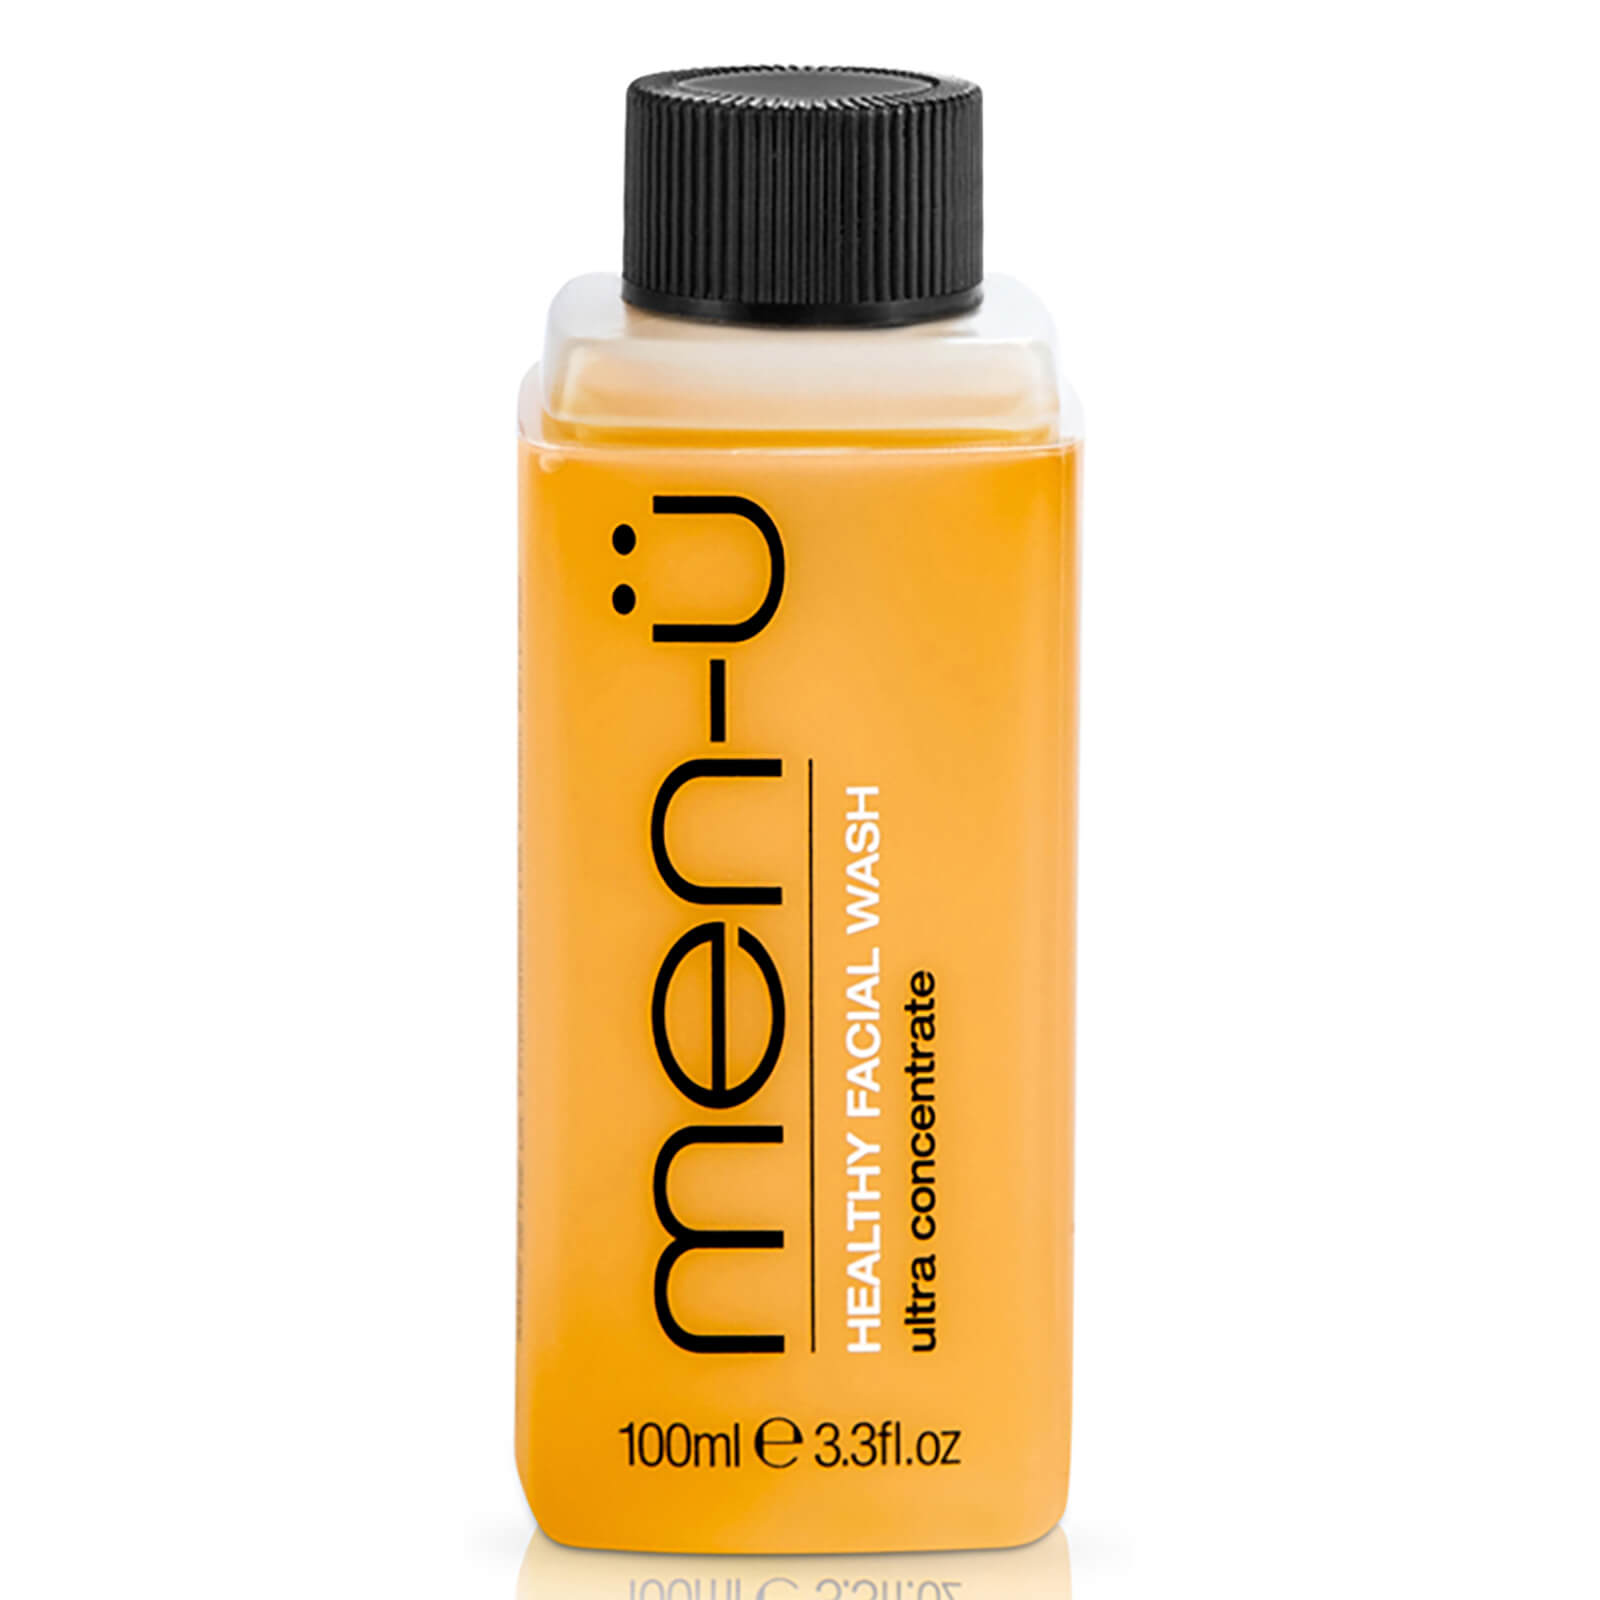 men-ü Healthy Facial Wash 100ml - Refill